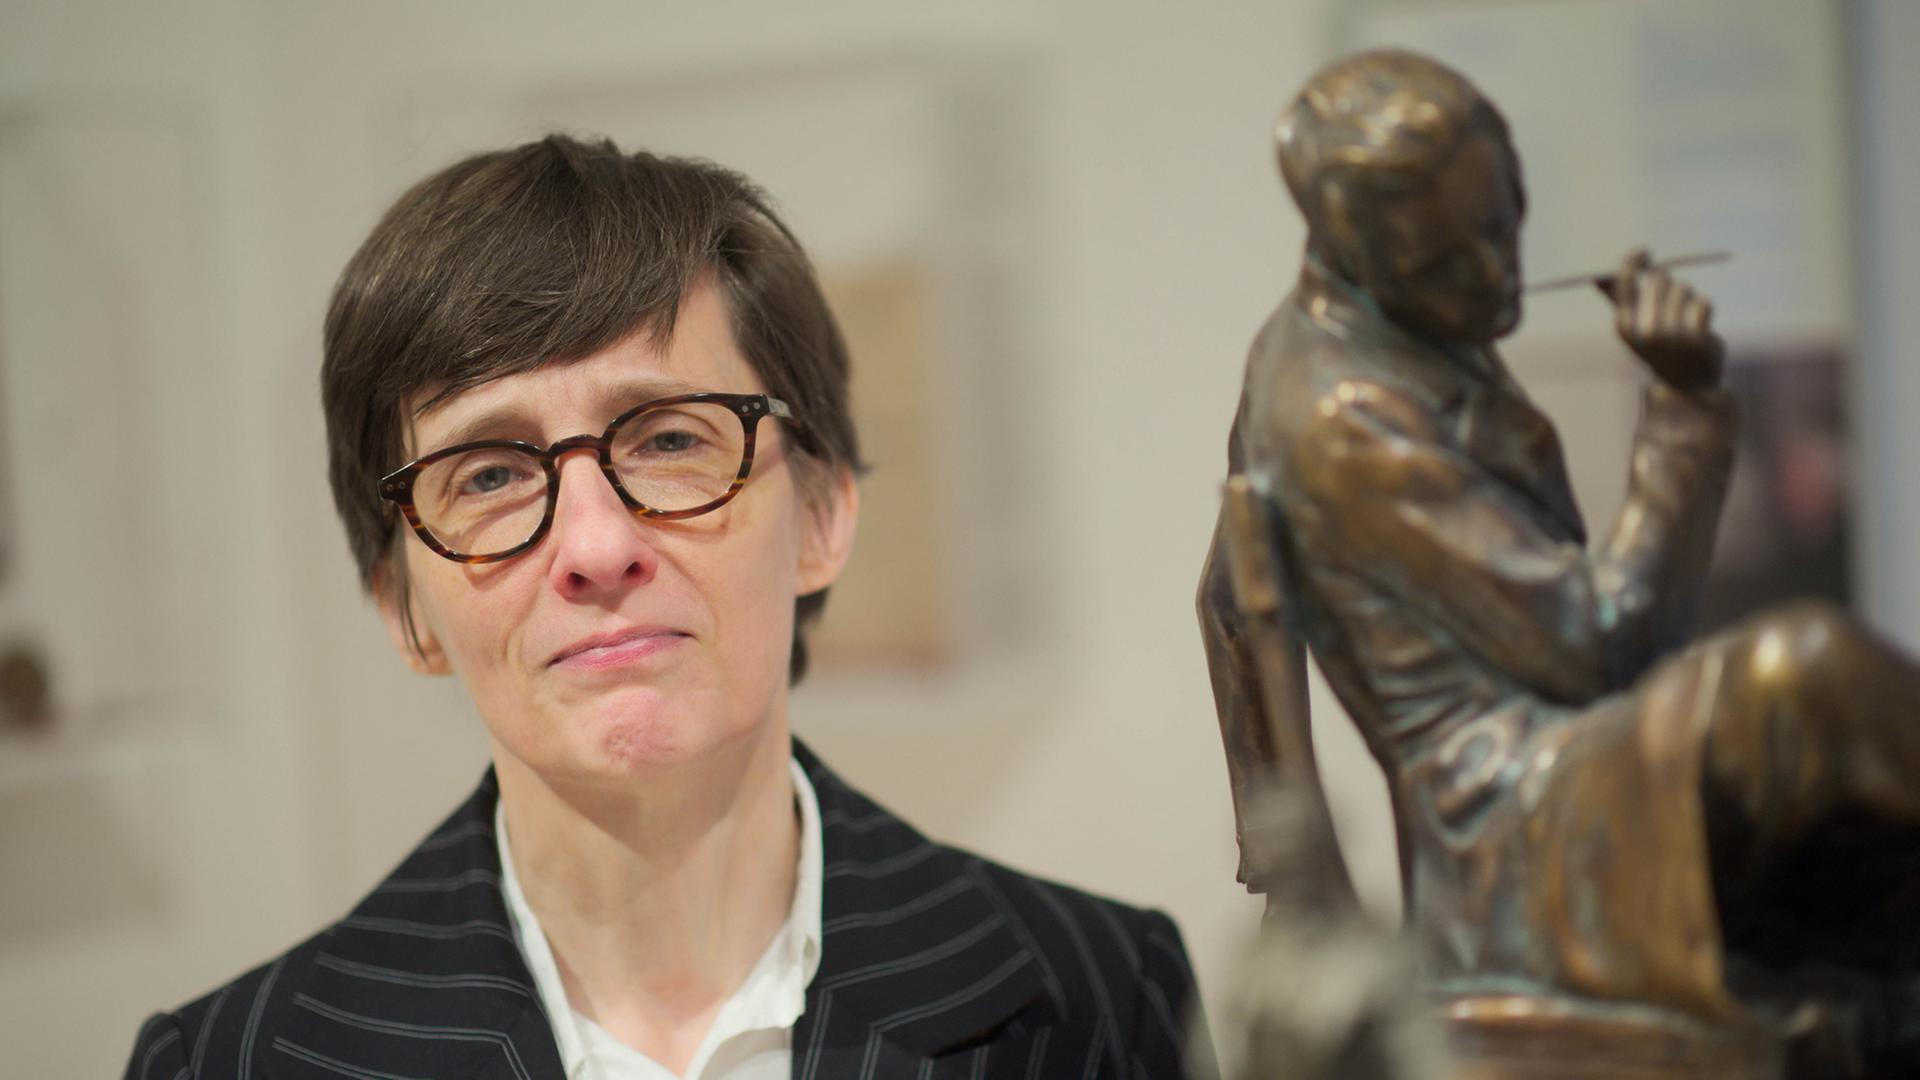 Die Autorin Alison Louise Kennedy steht am 09.12.2016 bei einem Pressegespräch in Düsseldorf (Nordrhein-Westfalen) neben Figuren, die den Schriftsteller Heinrich Heine darstellen.